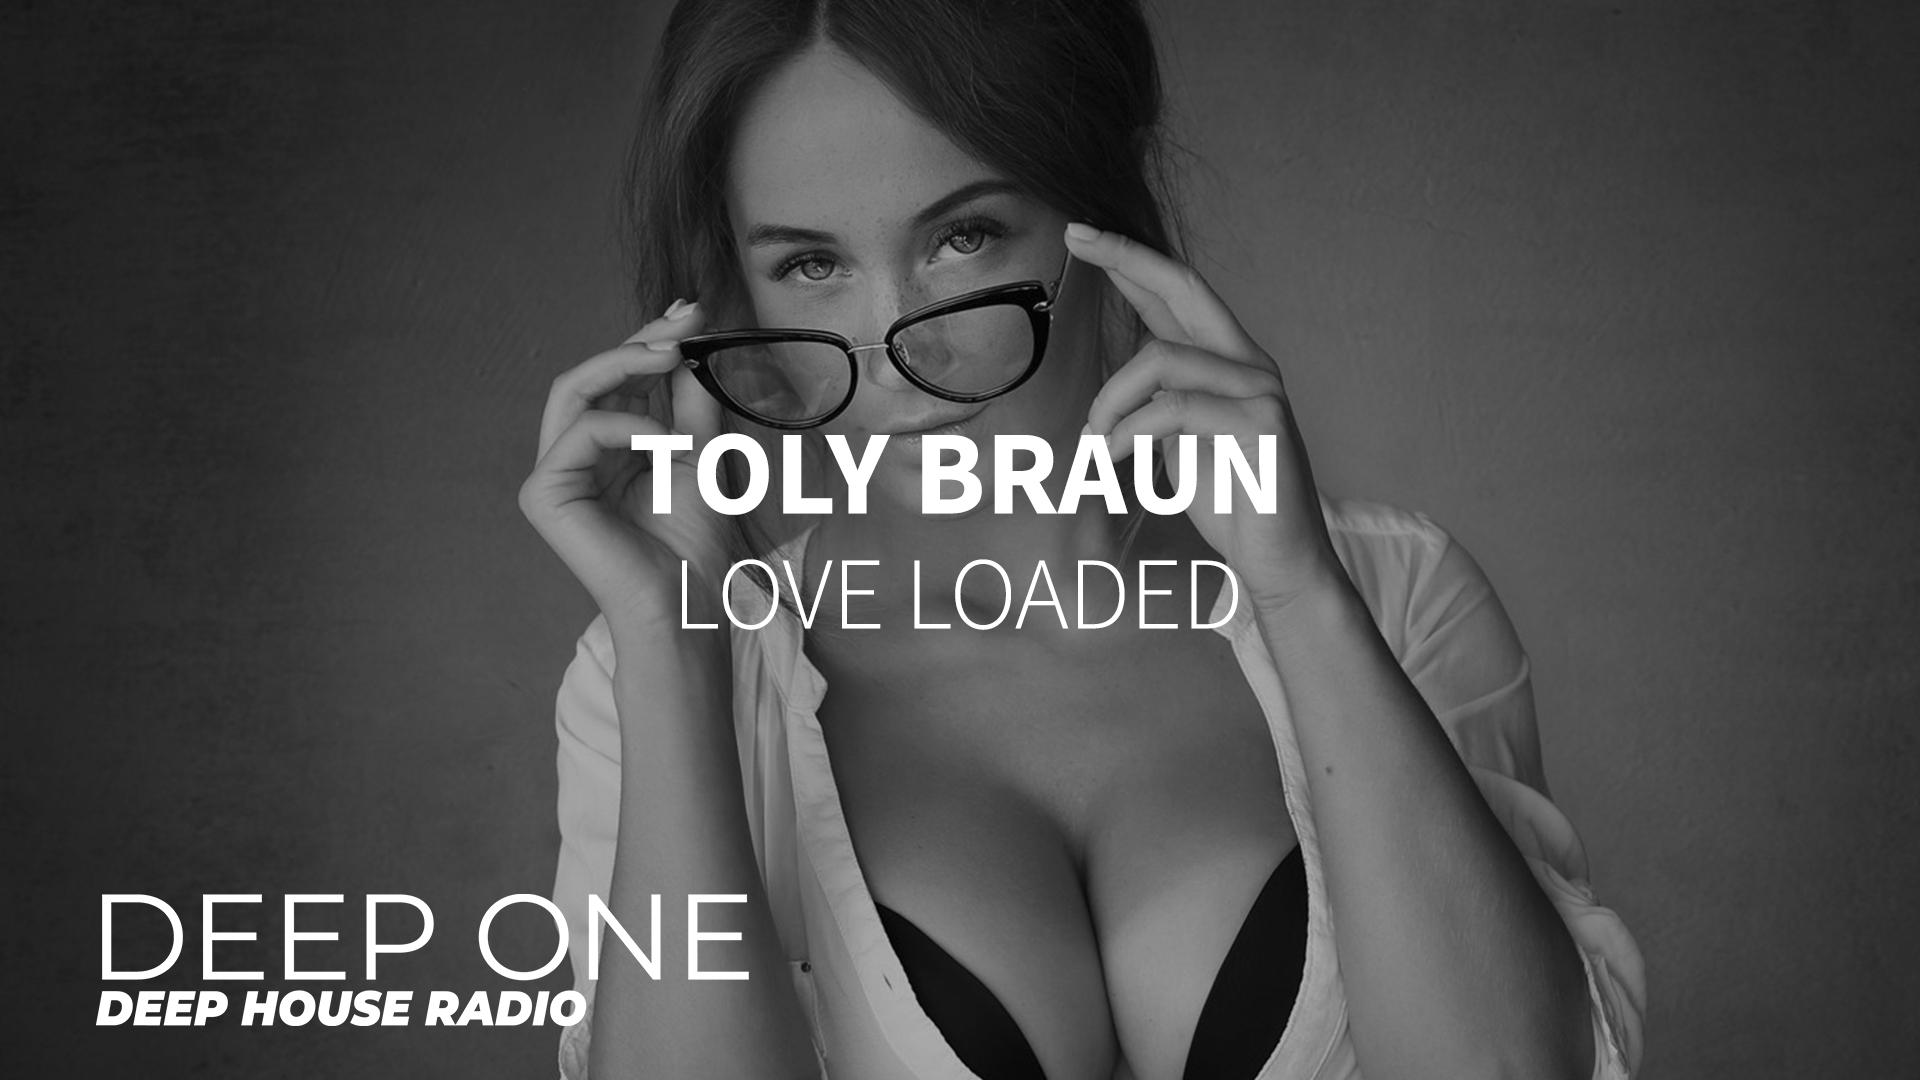 Любовь браун. Toly Braun. Toly Braun Music. Toly Braun - Killer. Toly Braun - Killer (Original Mix).